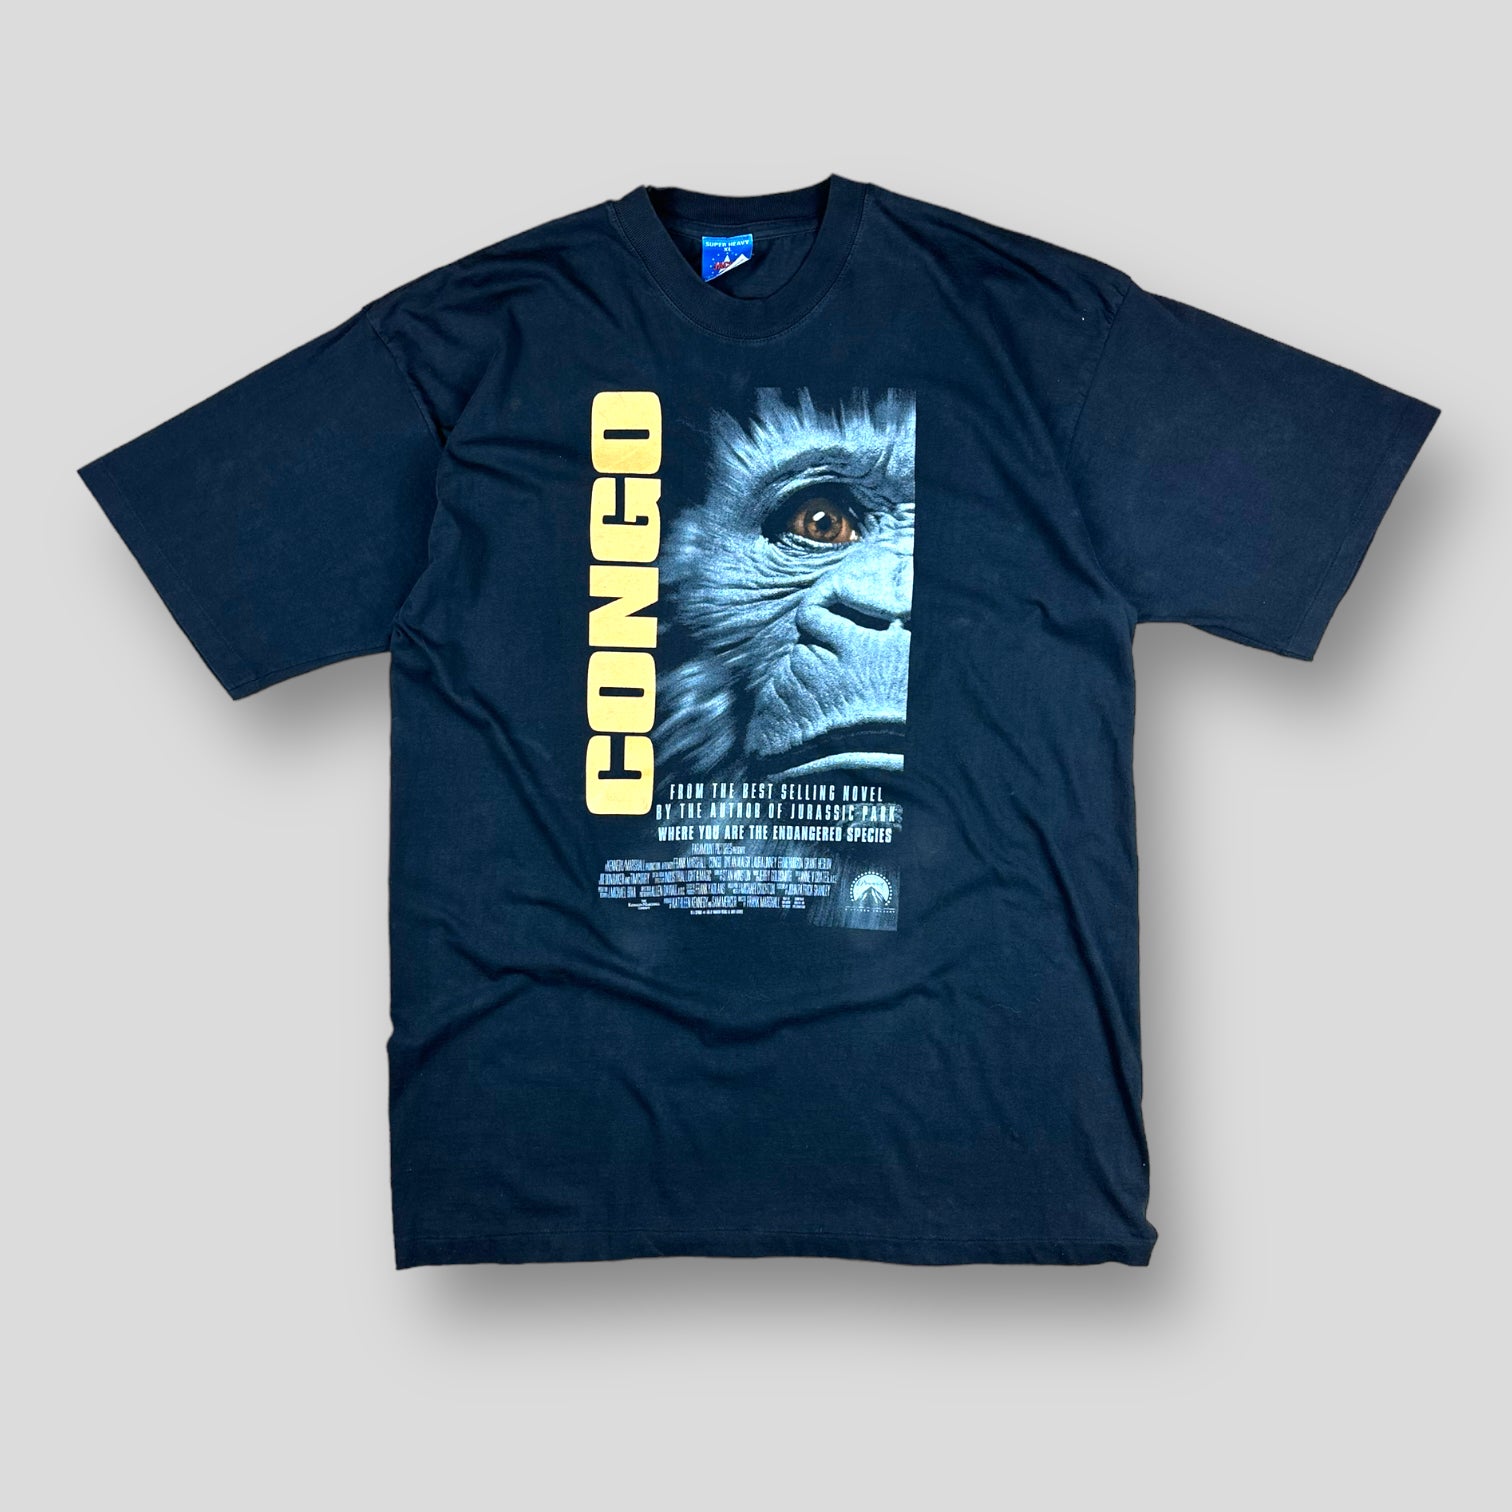 Congo T-shirt